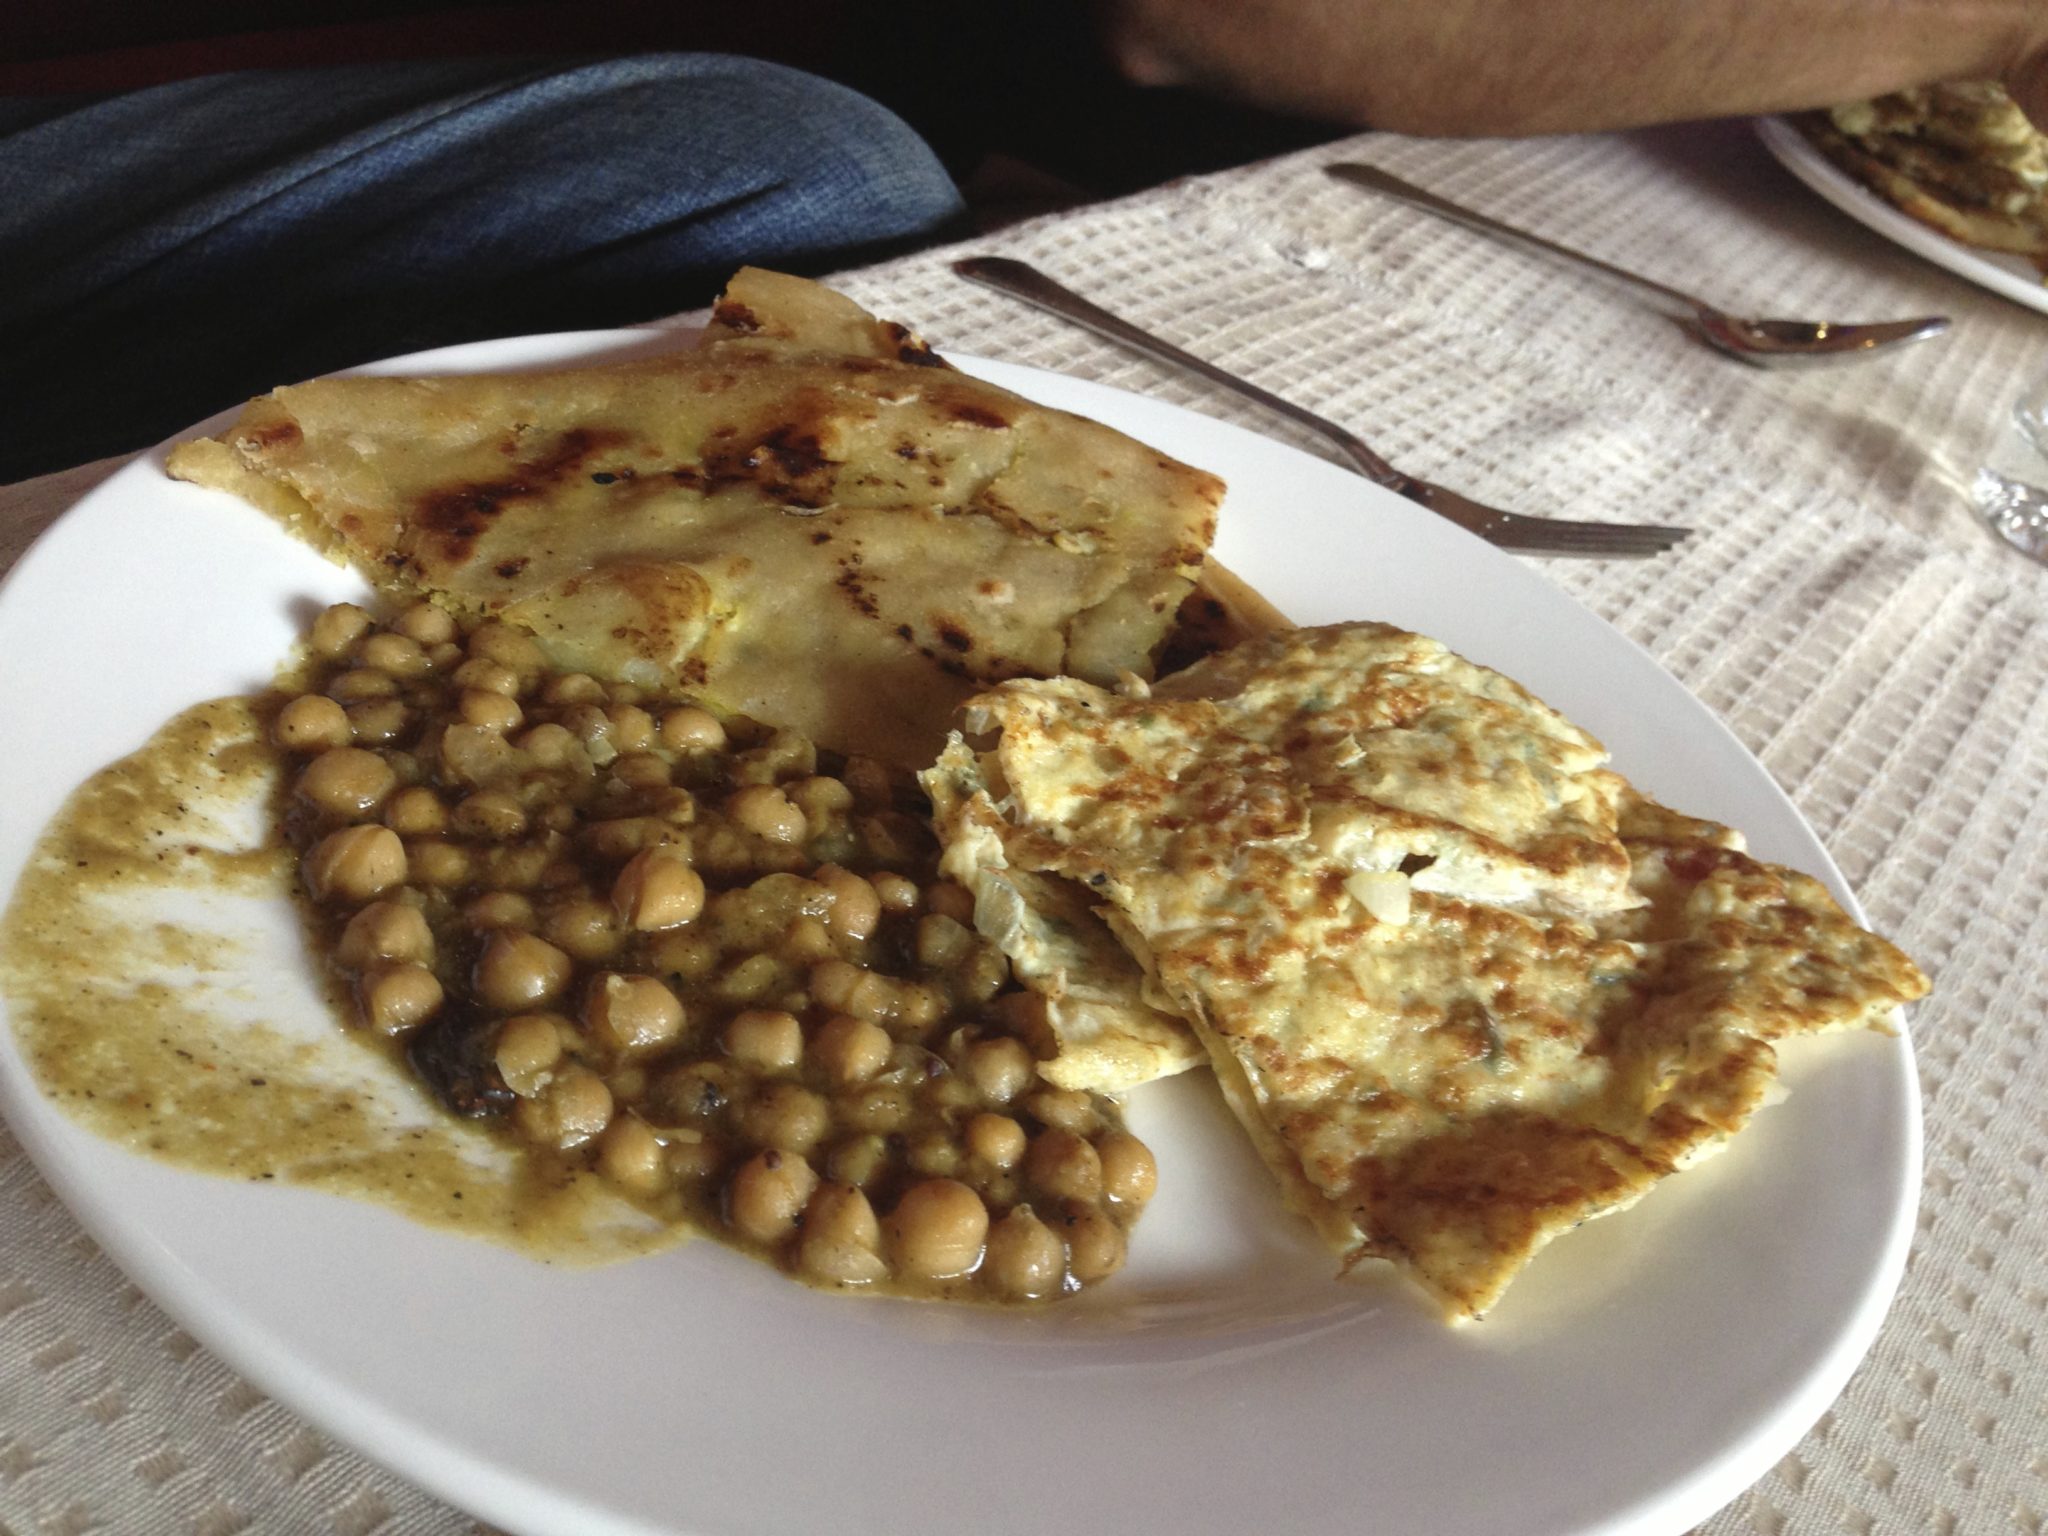 The Full Punjabi Breakfast at Al-Khan, Lahore!